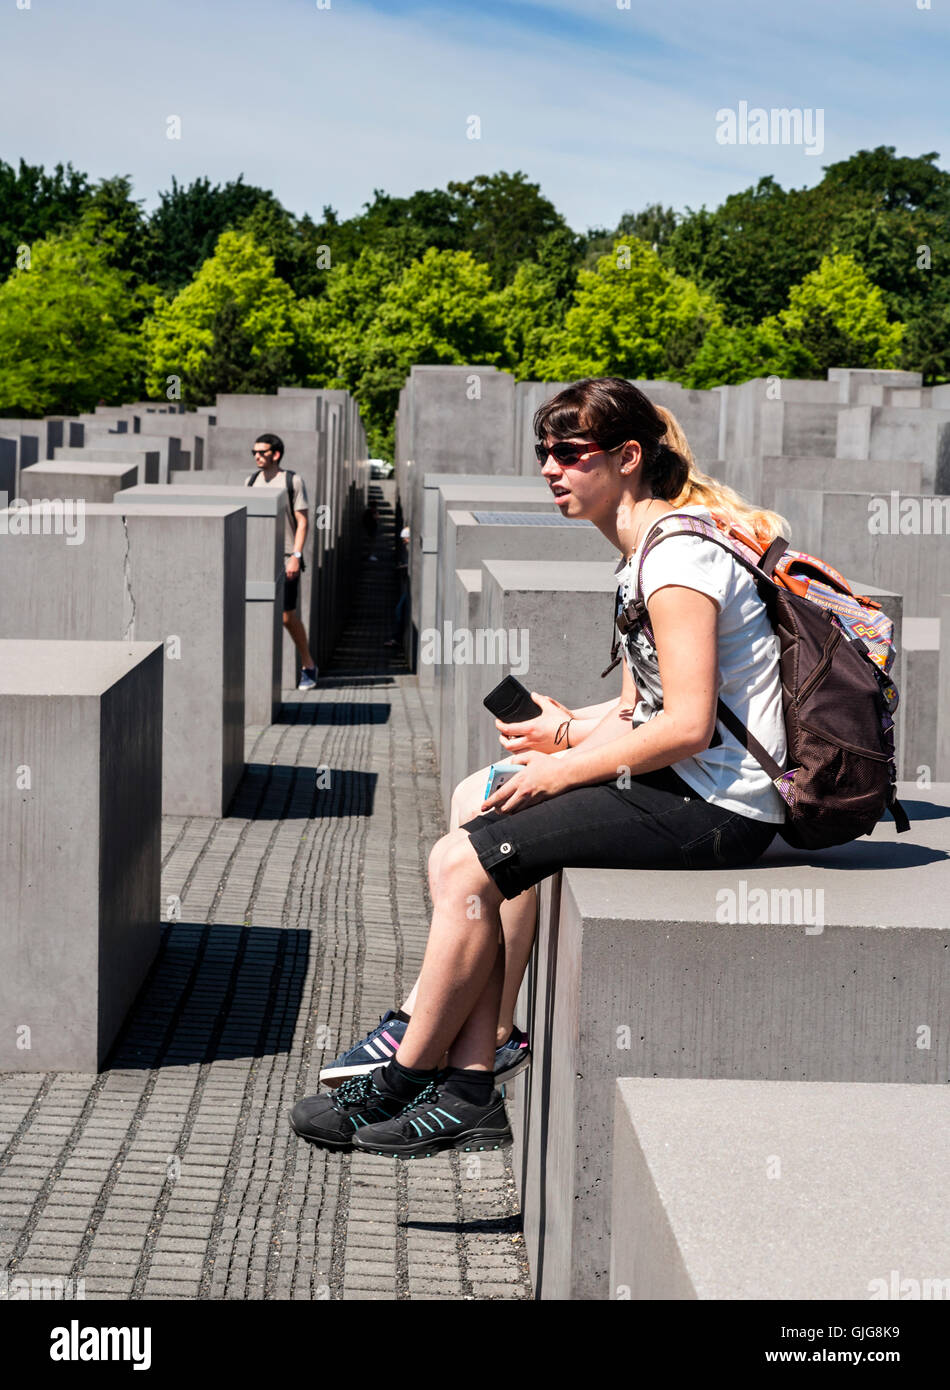 Touristen sitzen auf die Betonsteine von das Holocaust-Mahnmal für die ermordeten Juden Europas, Berlin, Deutschland. Stockfoto